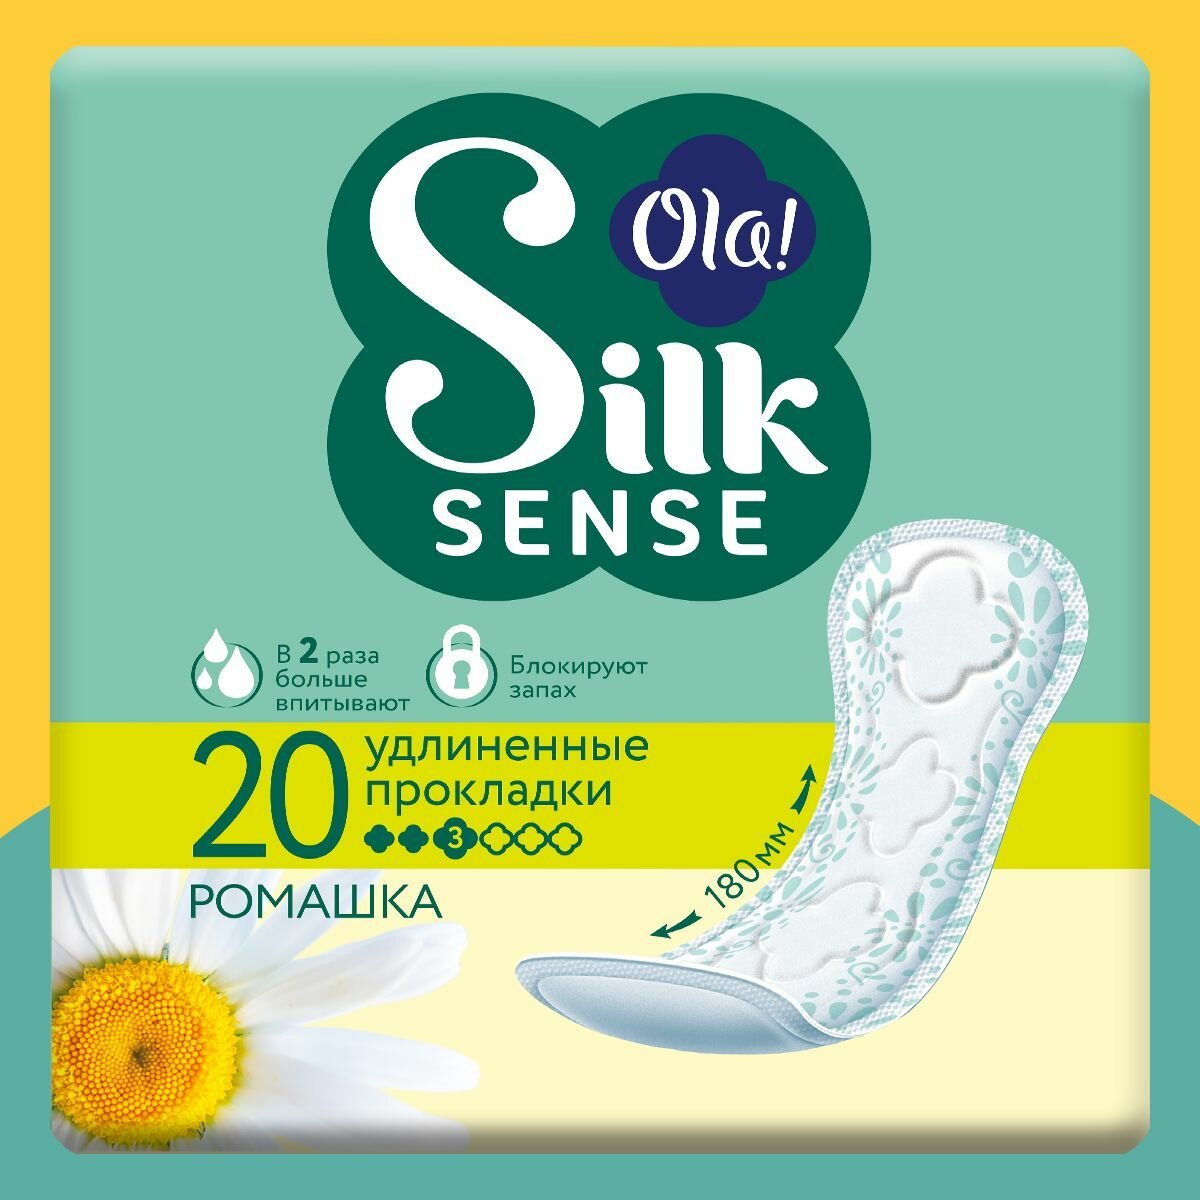 Ежедневные прокладки Ola! Silk Sense удлиненные, аромат Ромашка, 20 шт.